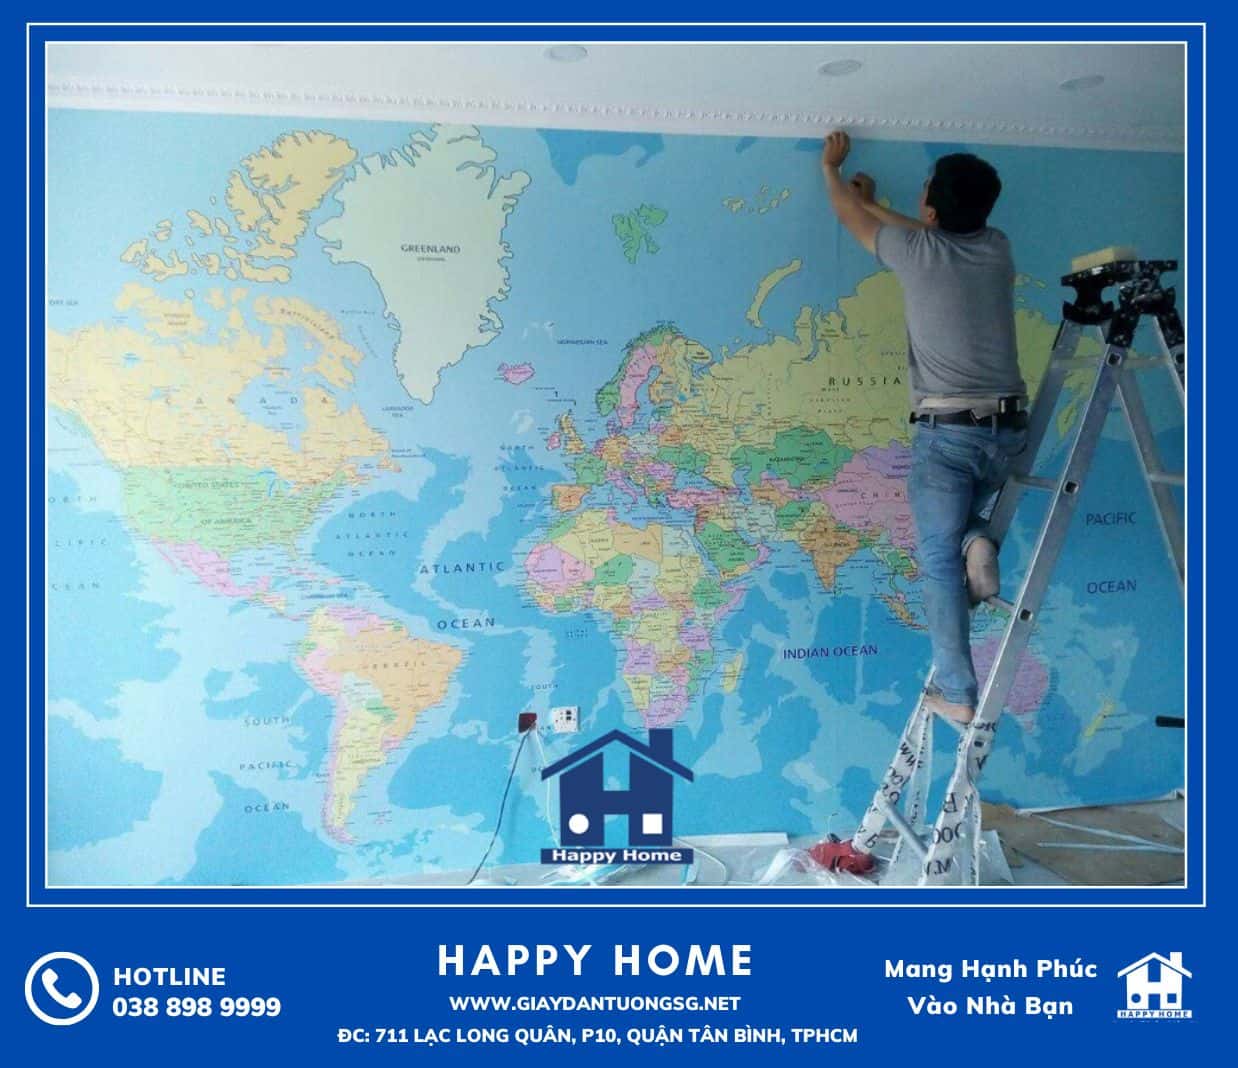 Đội ngũ Happy Home thi công tranh dán tường bản đồ tại căn hộ khách hàng